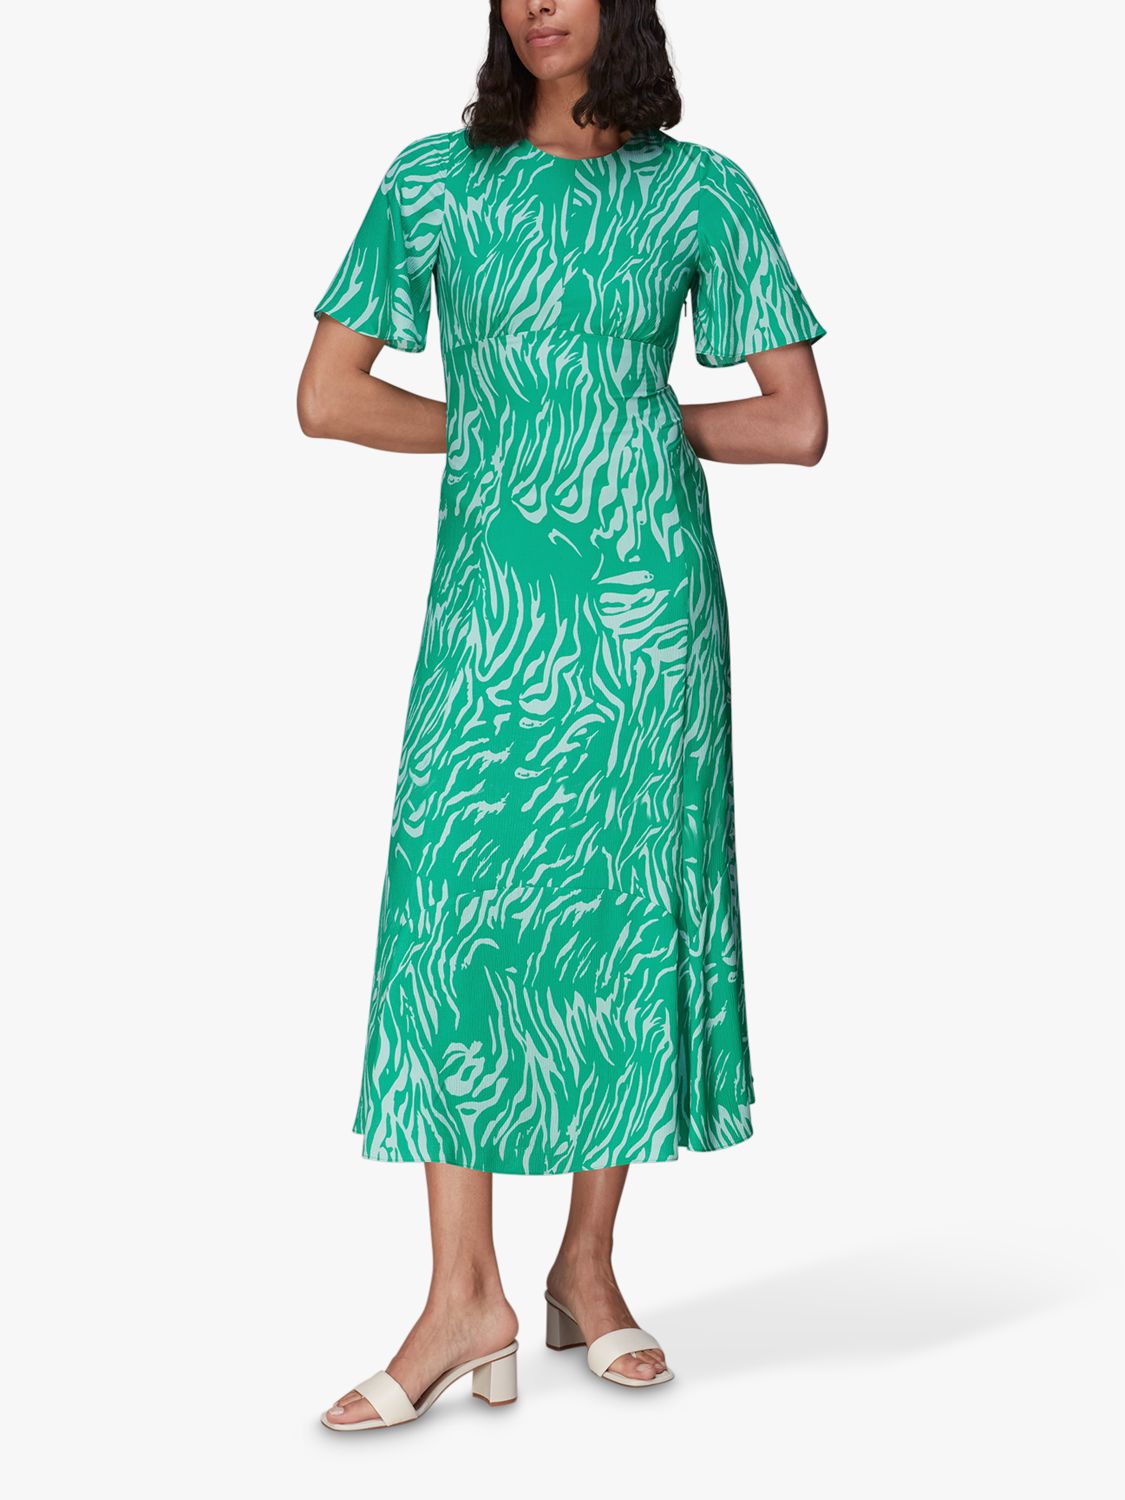 Green/Multi Tiger Animal Print Swimsuit, WHISTLES